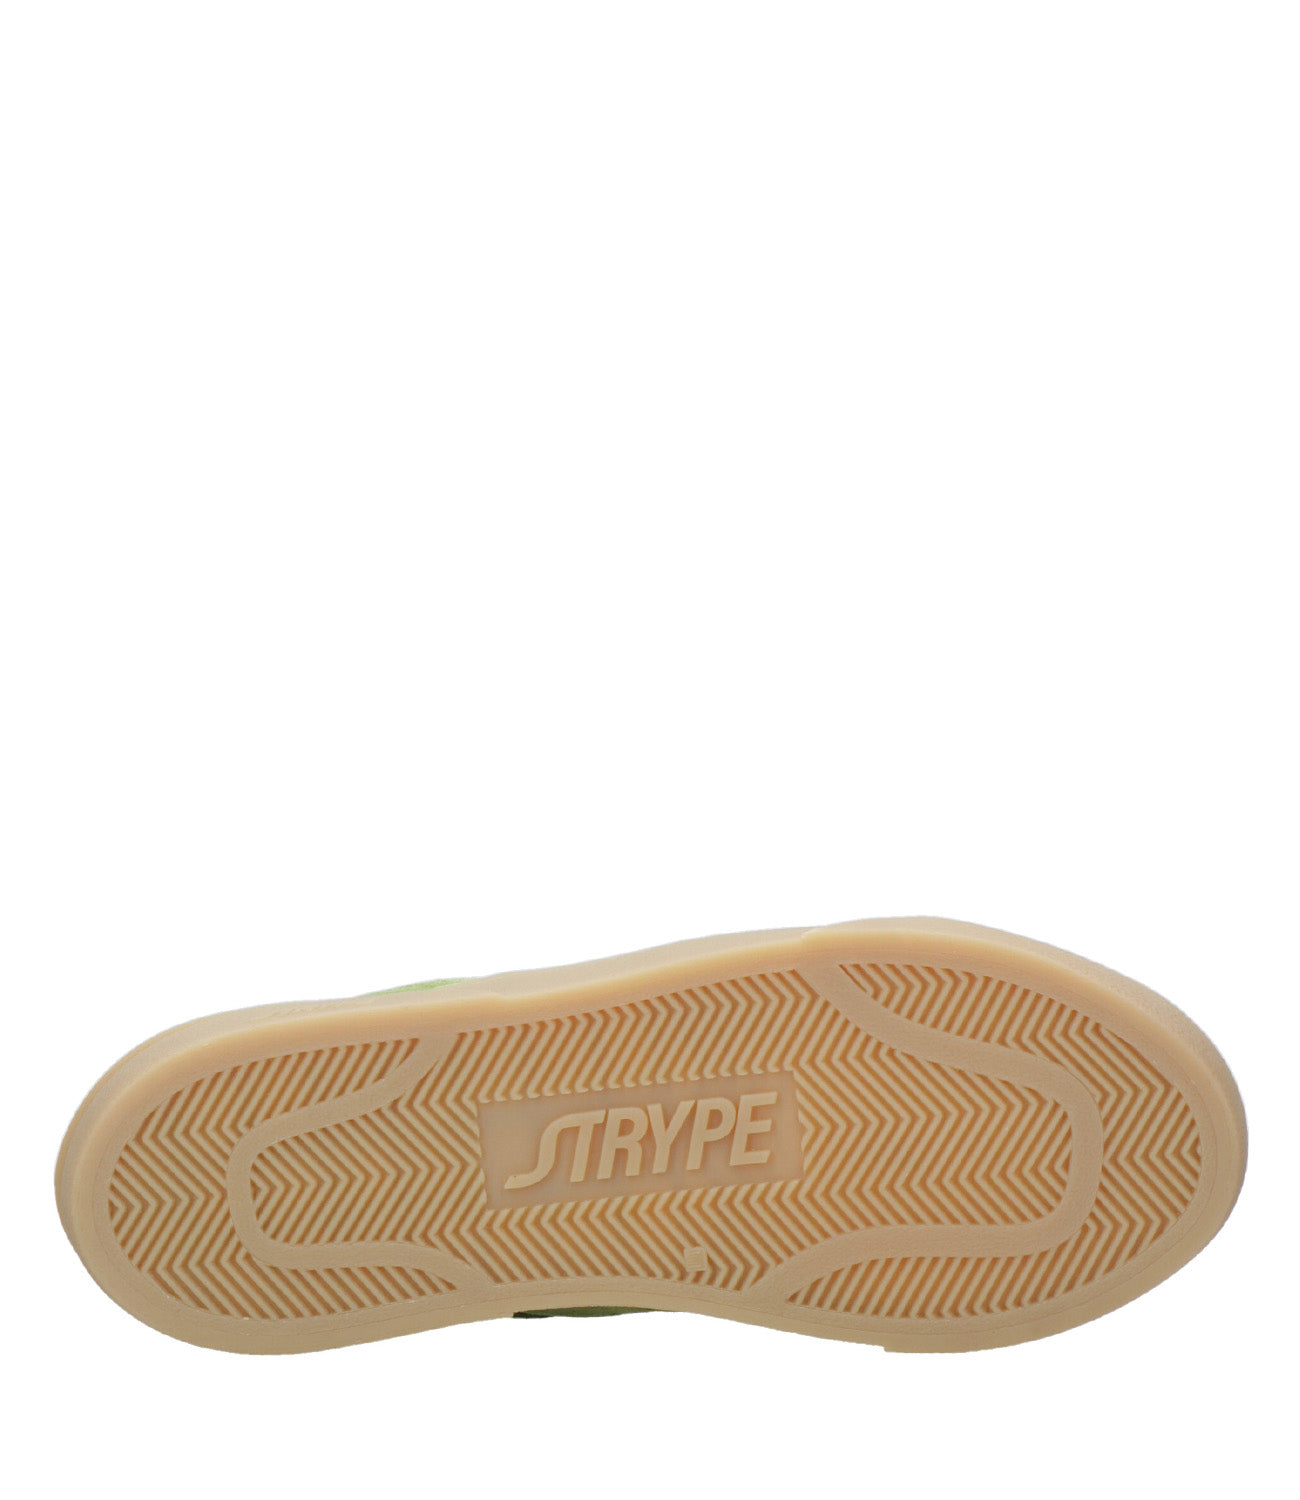 Strype | Sneakers Basket Low Verdi